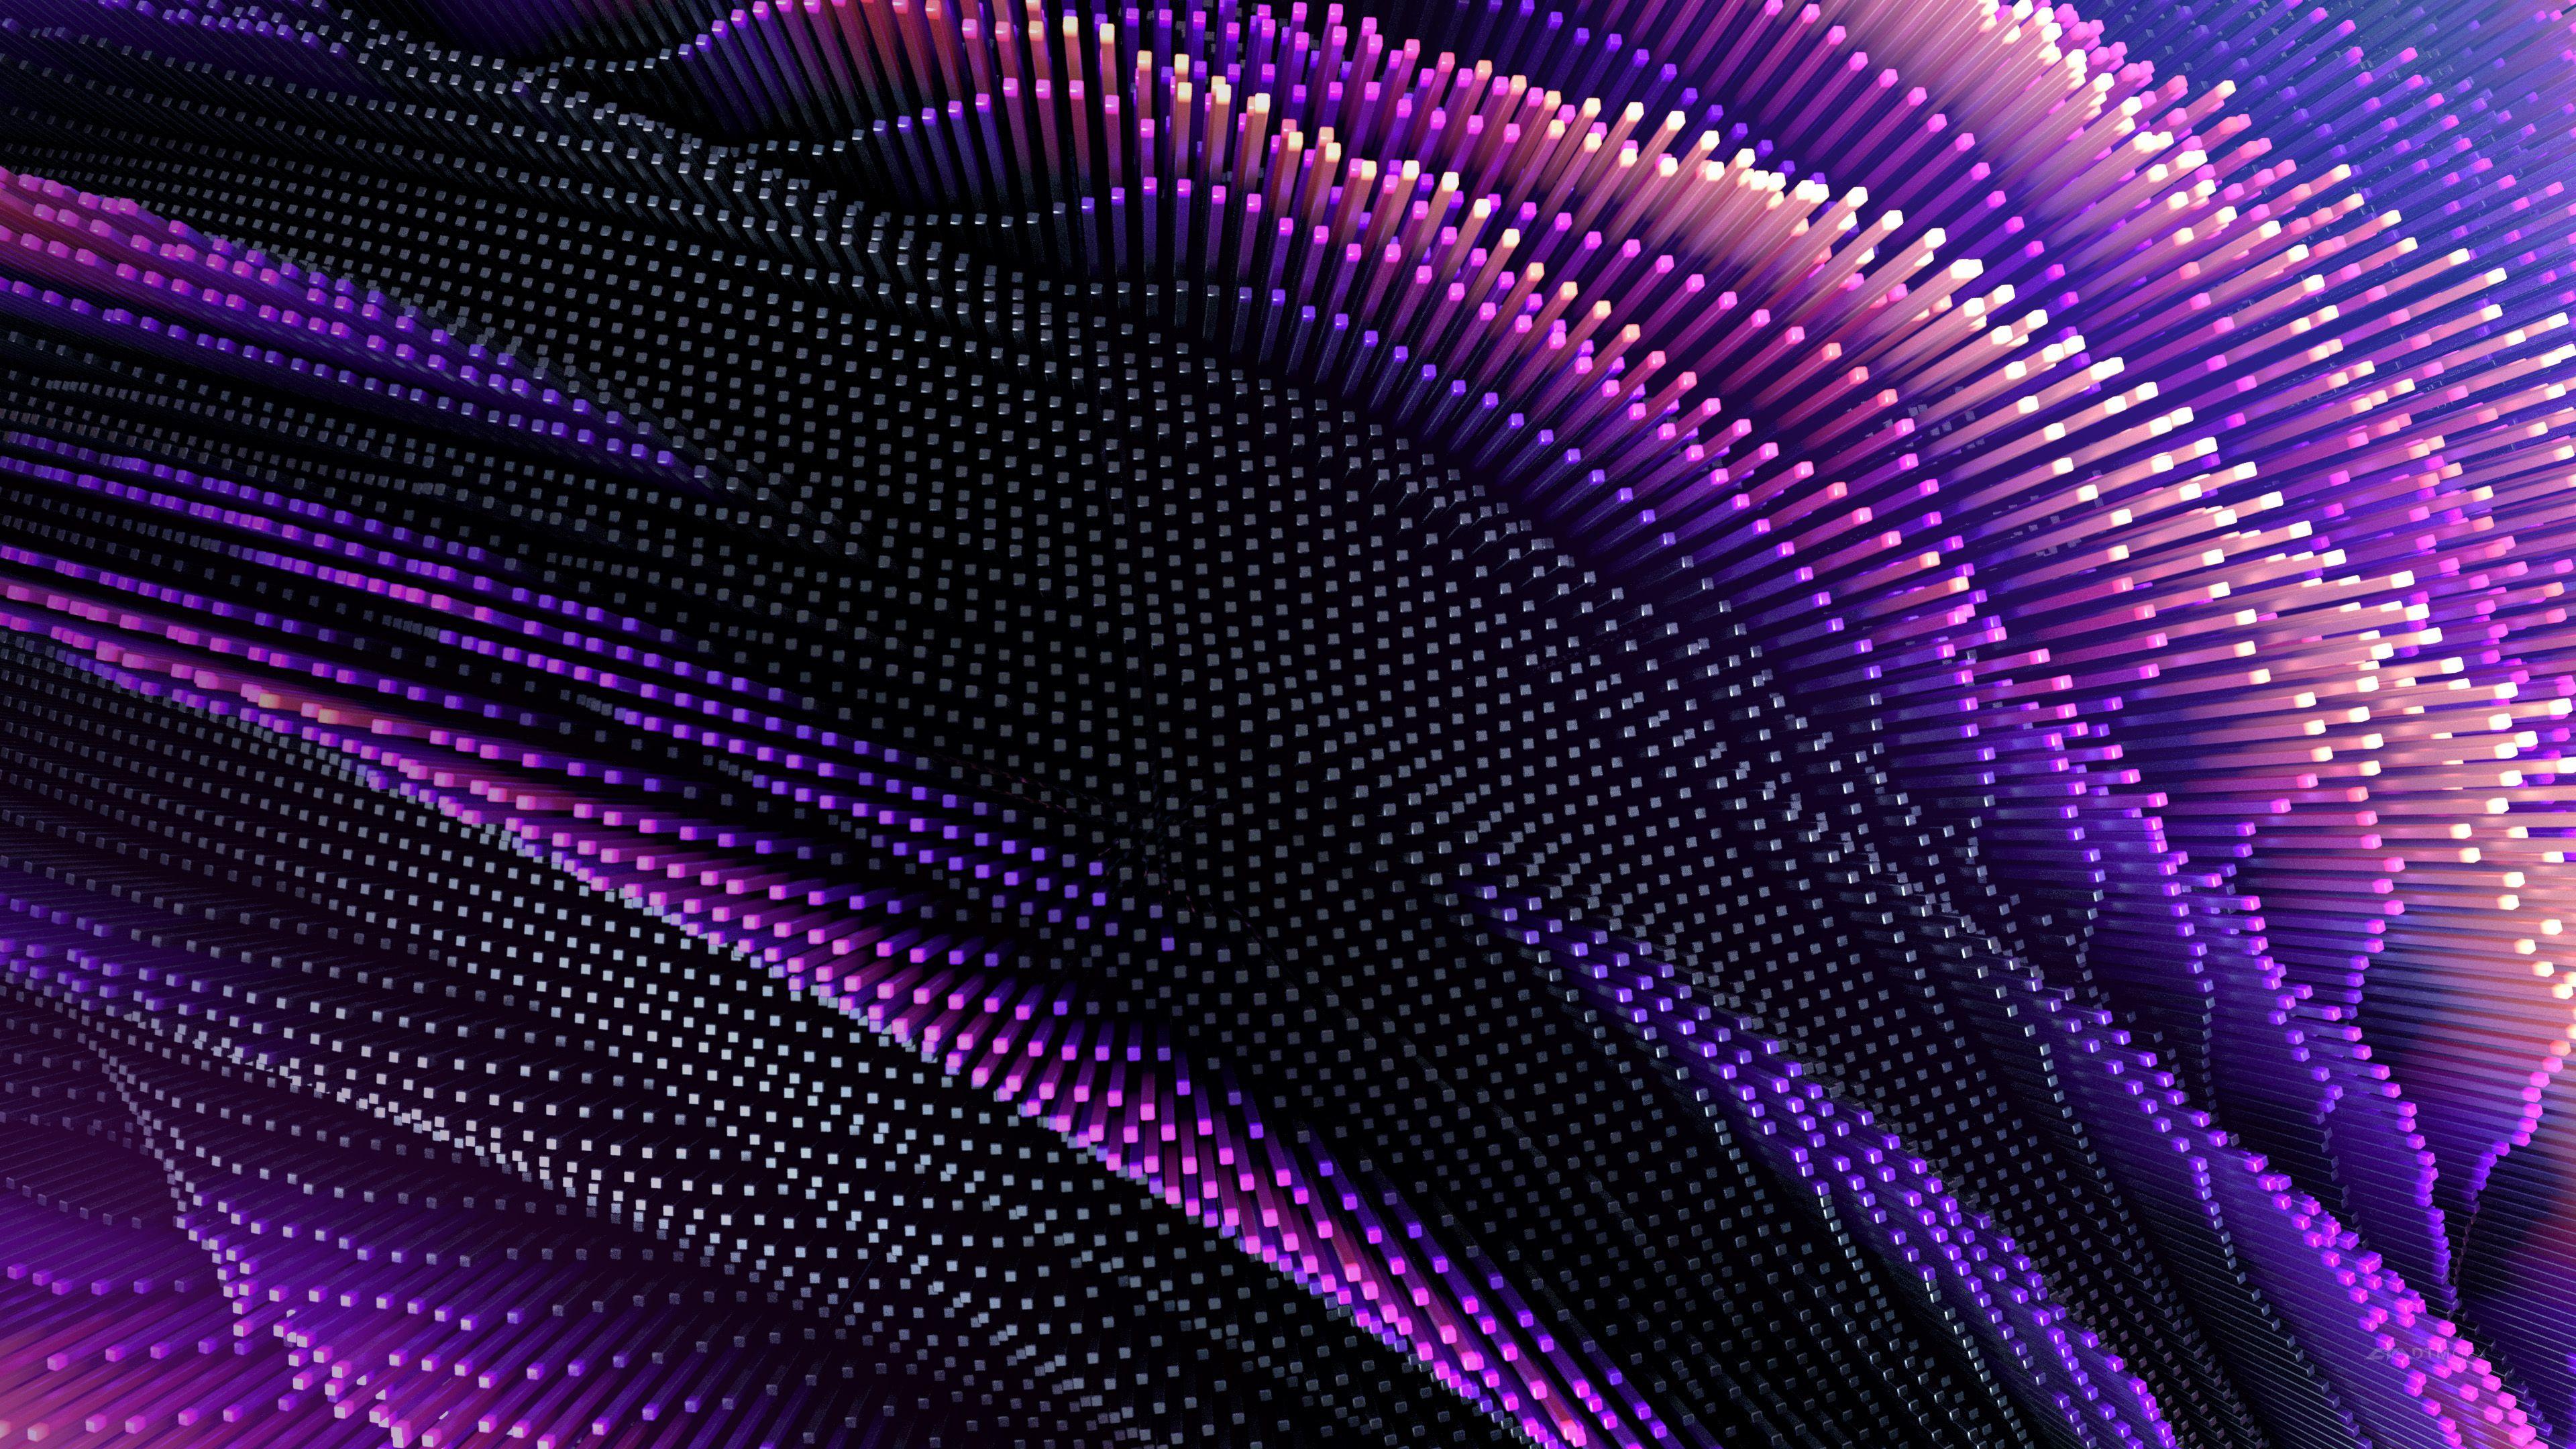 4K Purple HD Wallpapers - Top Free 4K Purple HD Backgrounds